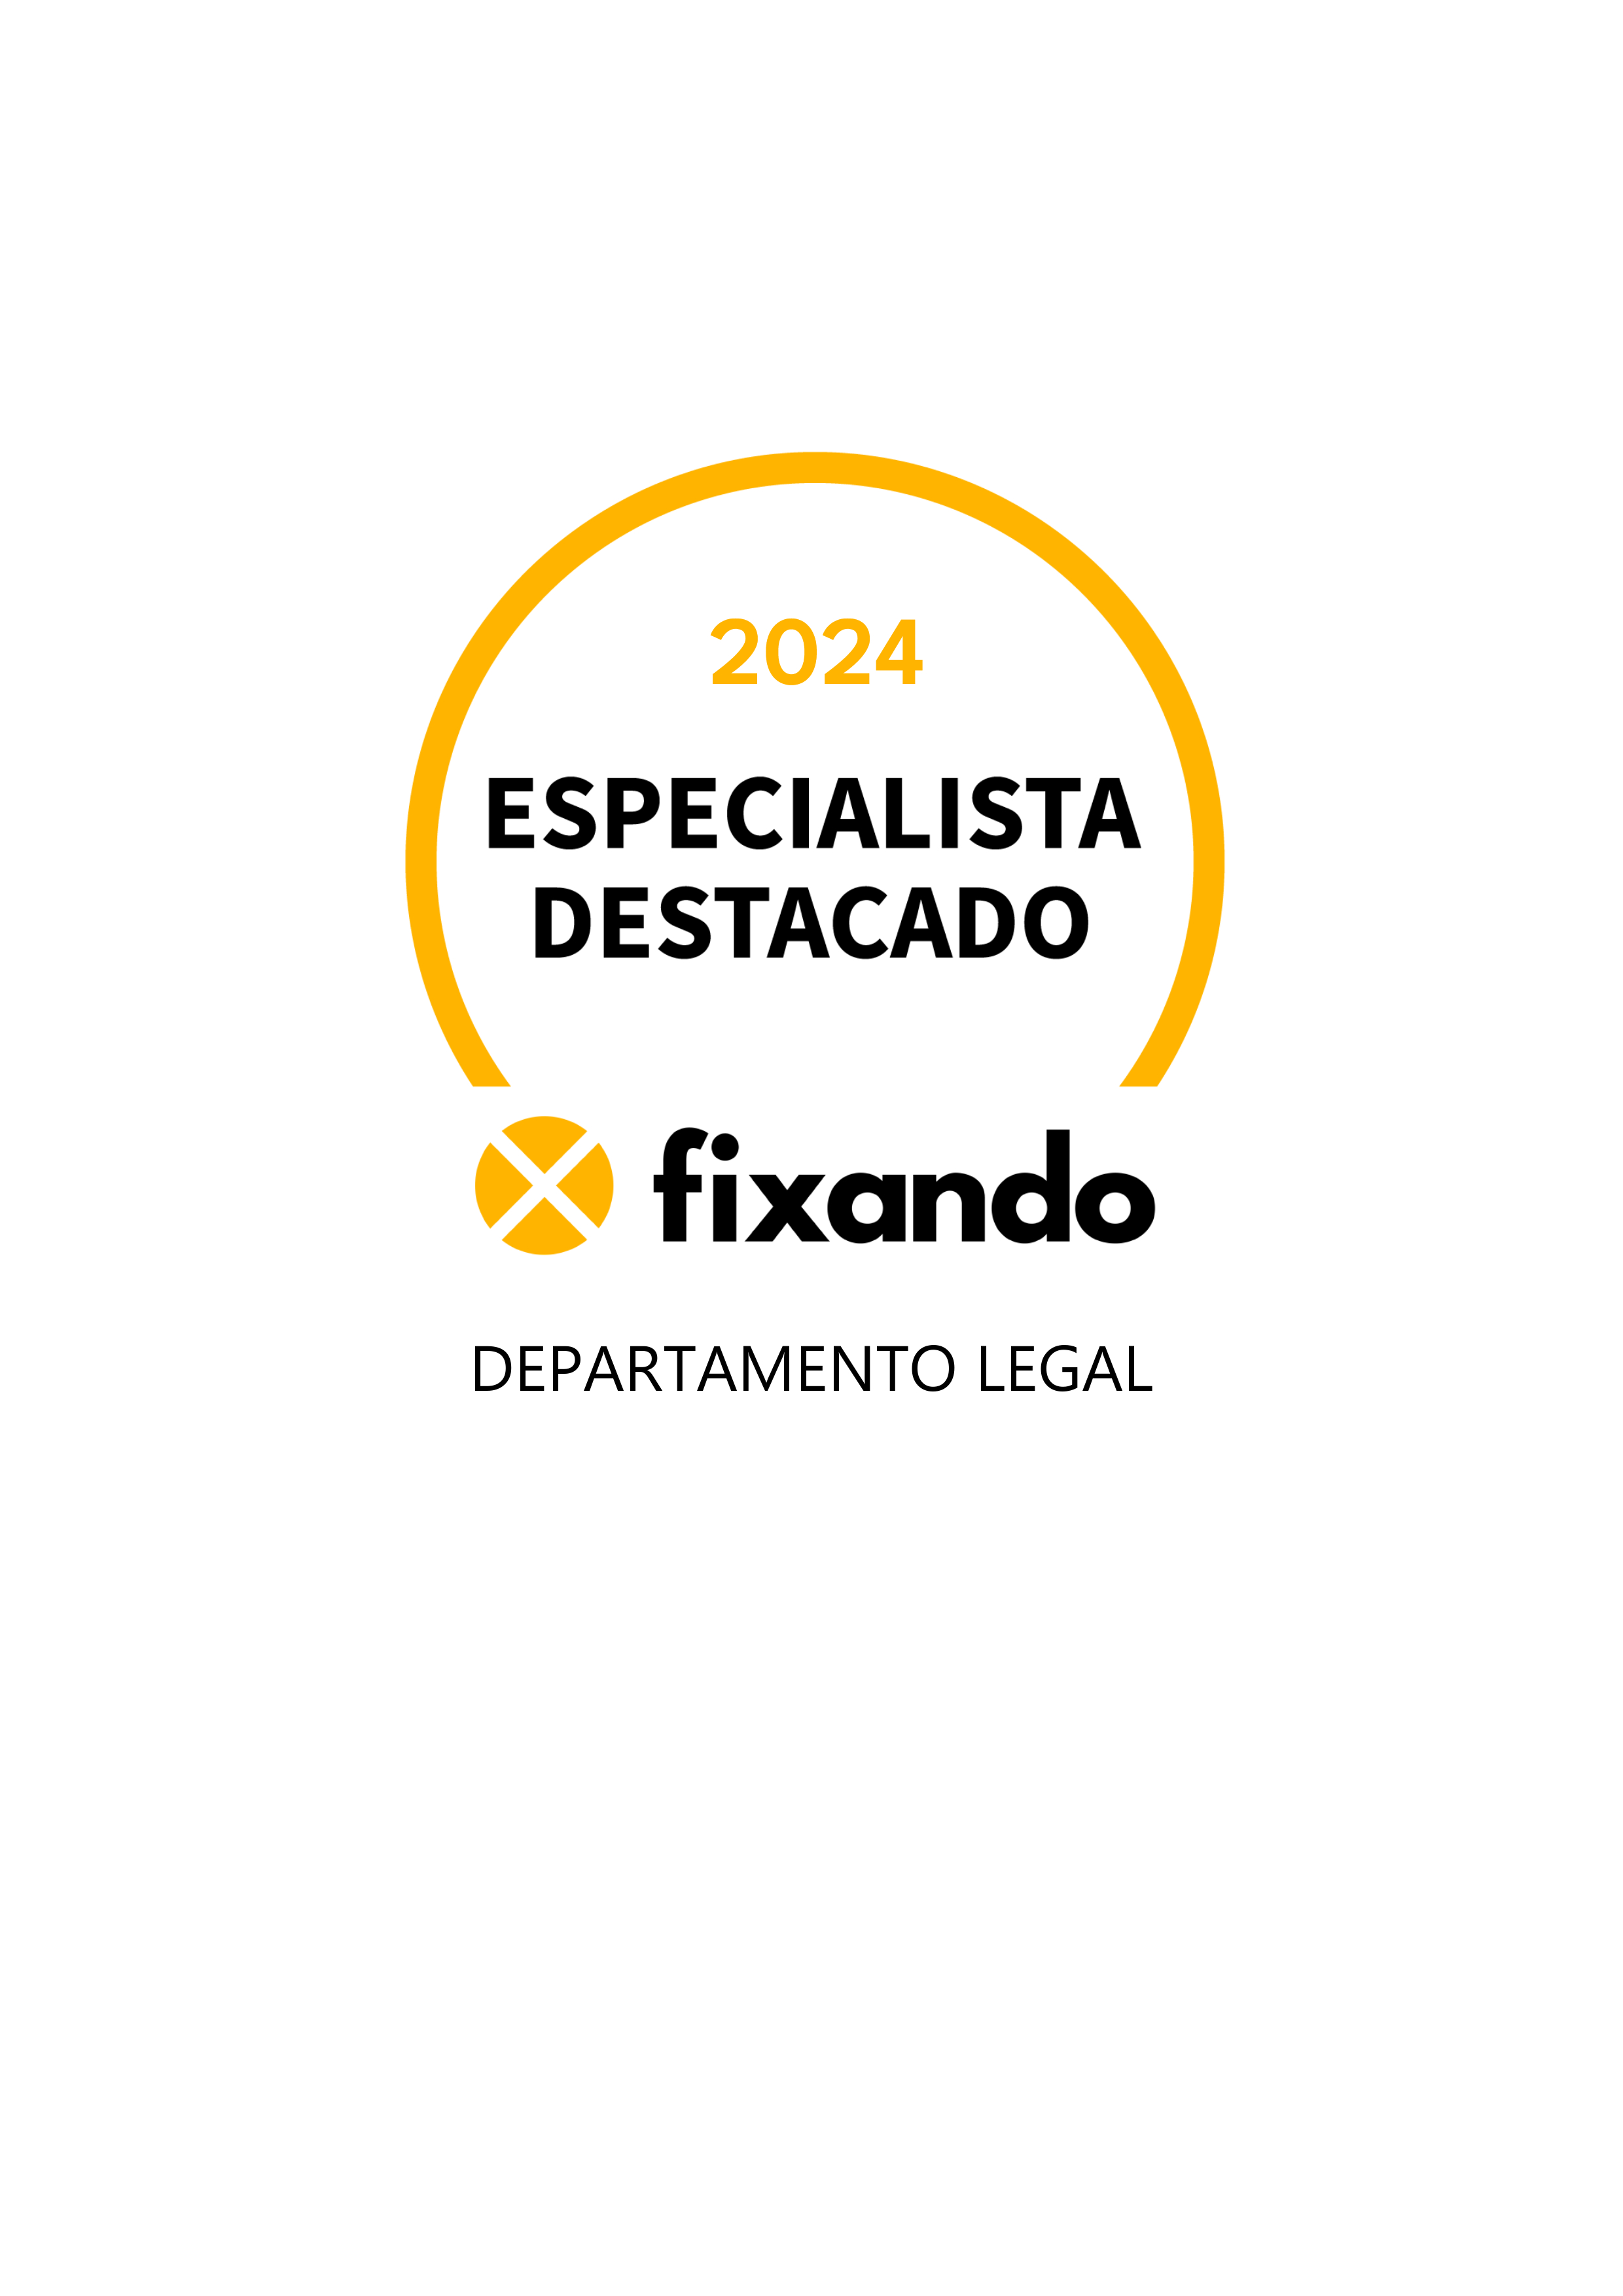 Departamento Legal - Lisboa - Avaliação de Imóveis